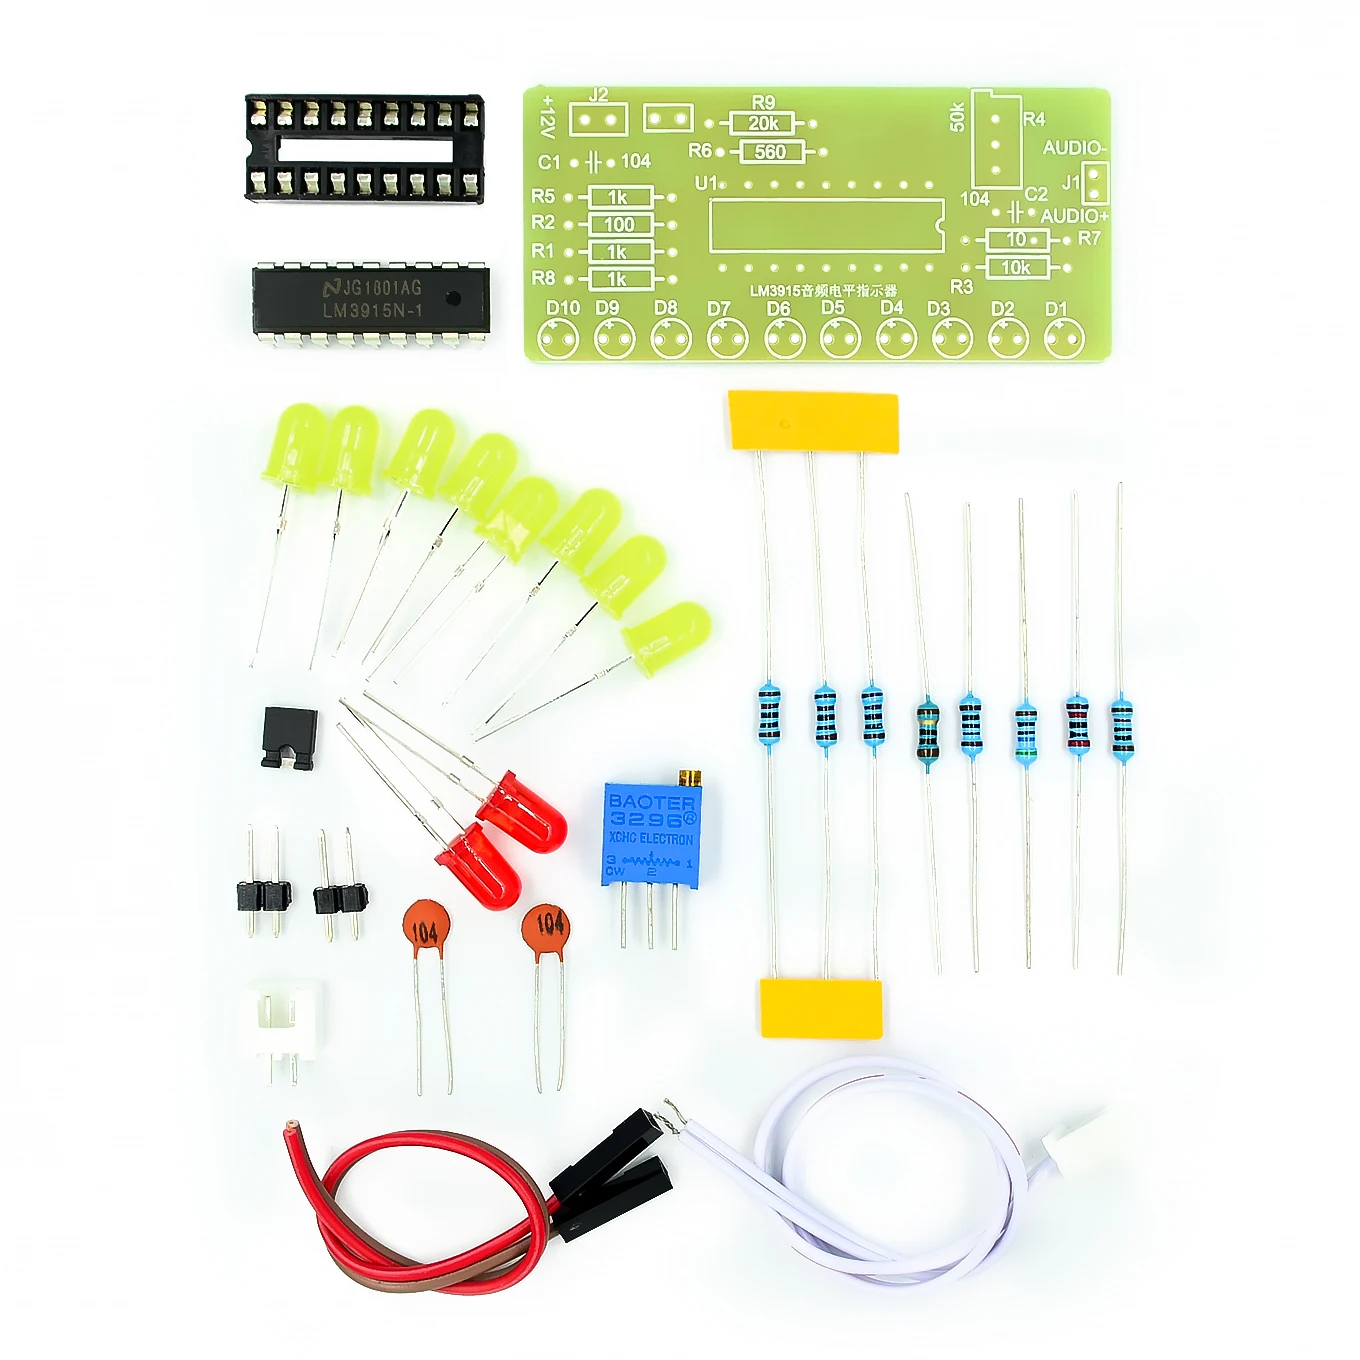 LM3915 10 светодиодный звуковой анализатор спектра, индикатор уровня, набор, сделай сам, Электронная пайка, практический набор